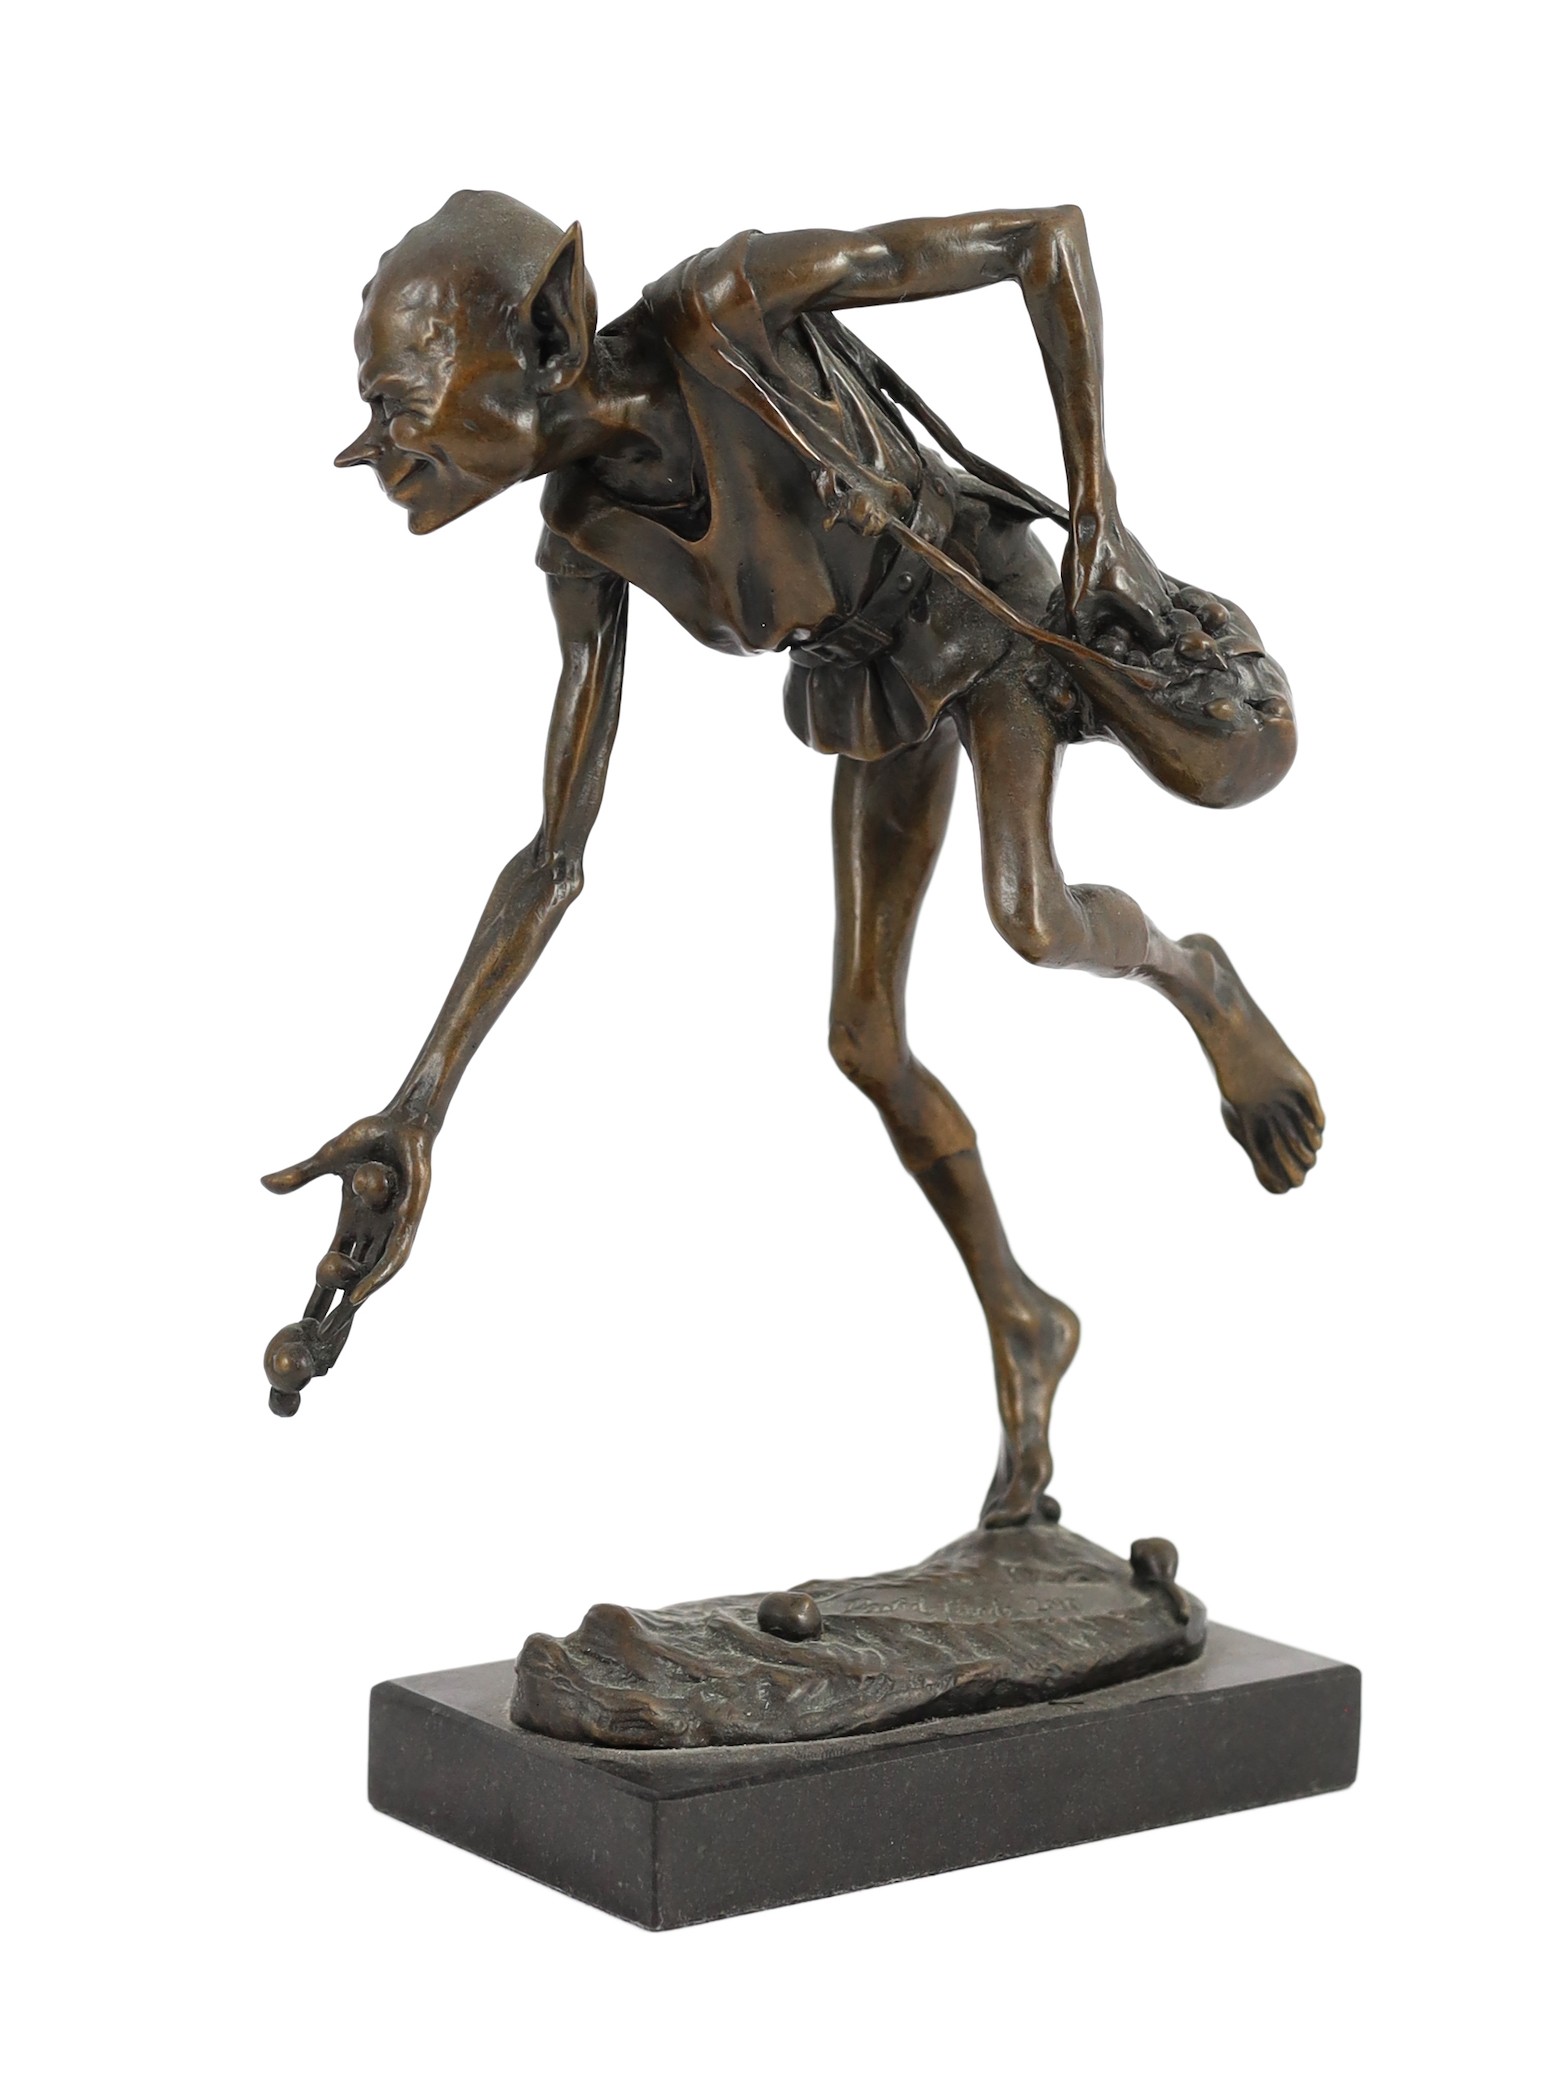 David Goode (British, b.1966). A bronze figure ‘Snailmaker’, height 27cm